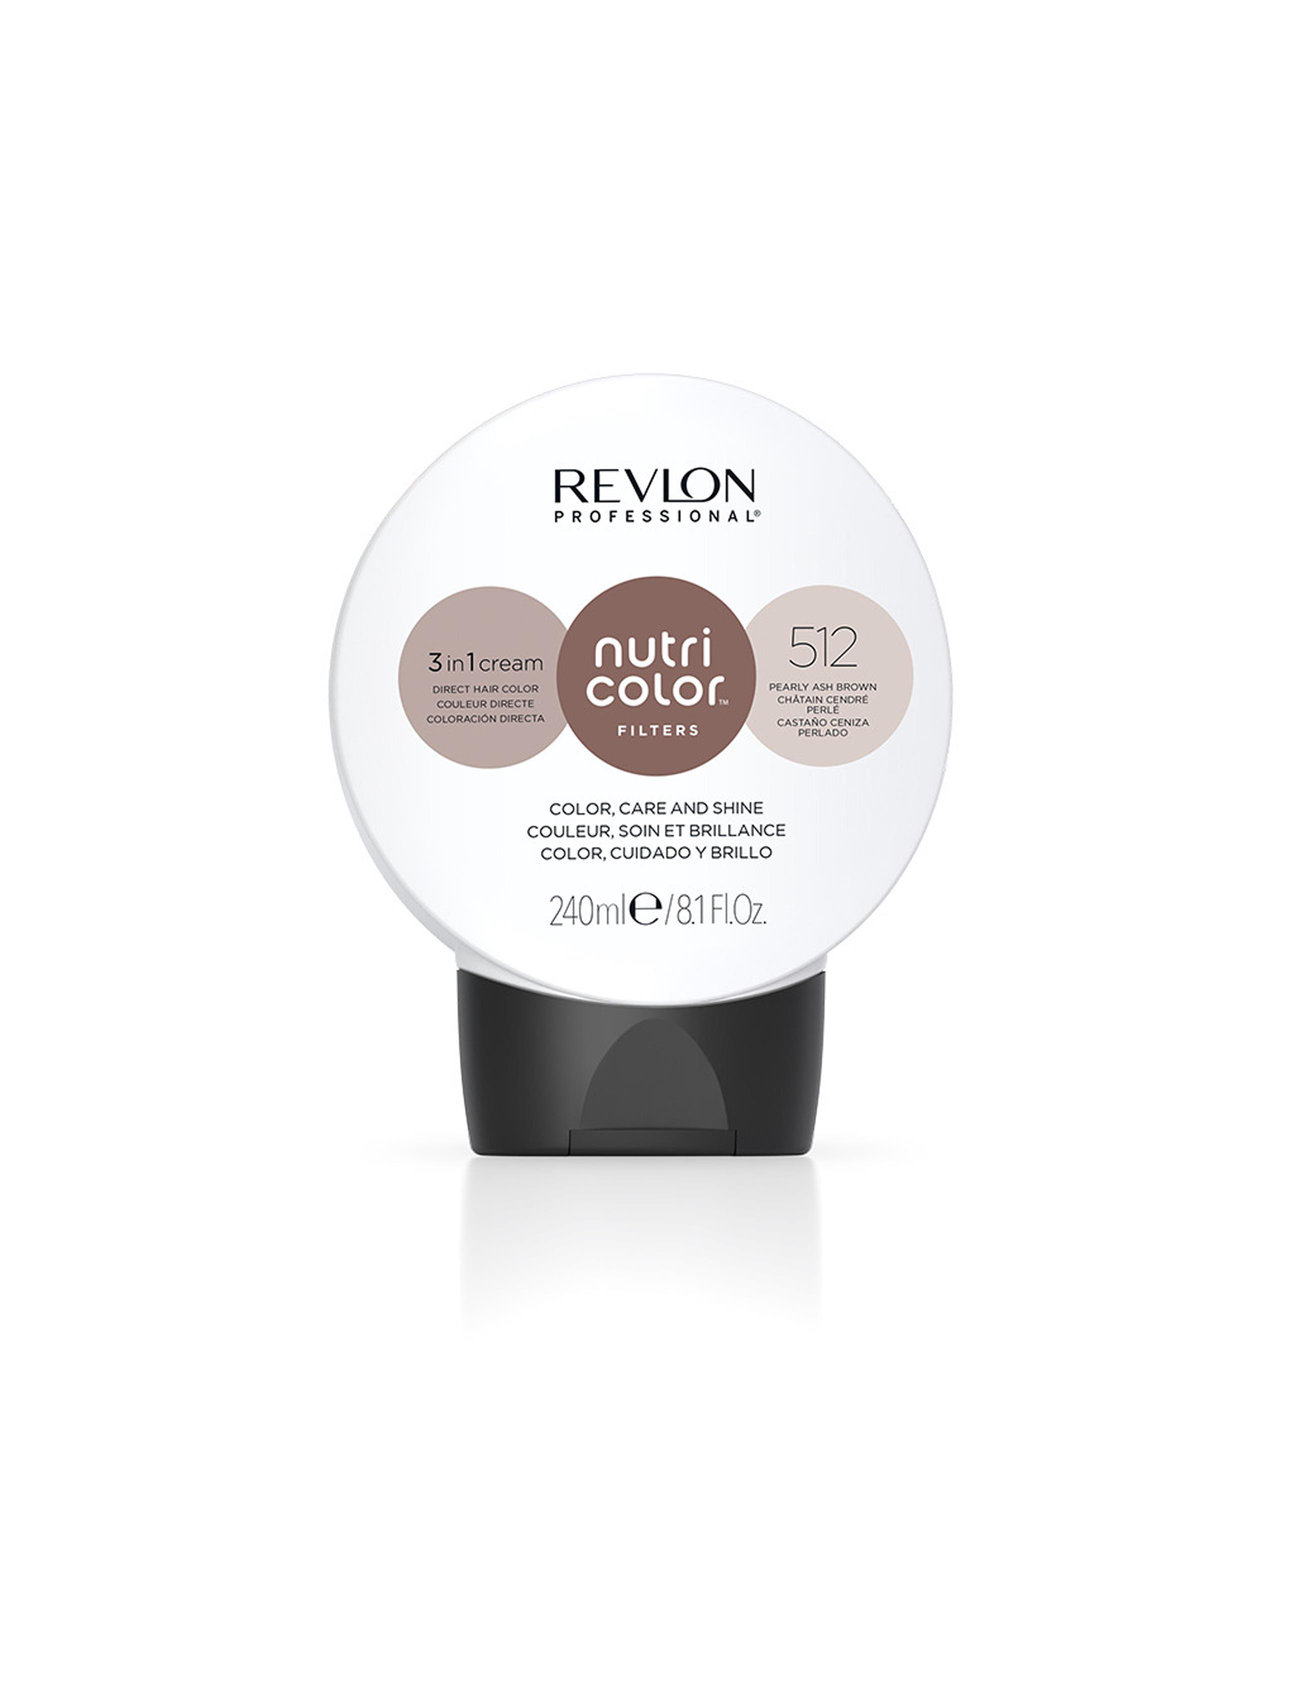 "Revlon Professional" "Nutri Color Filters 512 Beauty Women Hair Care Treatments Nude Revlon